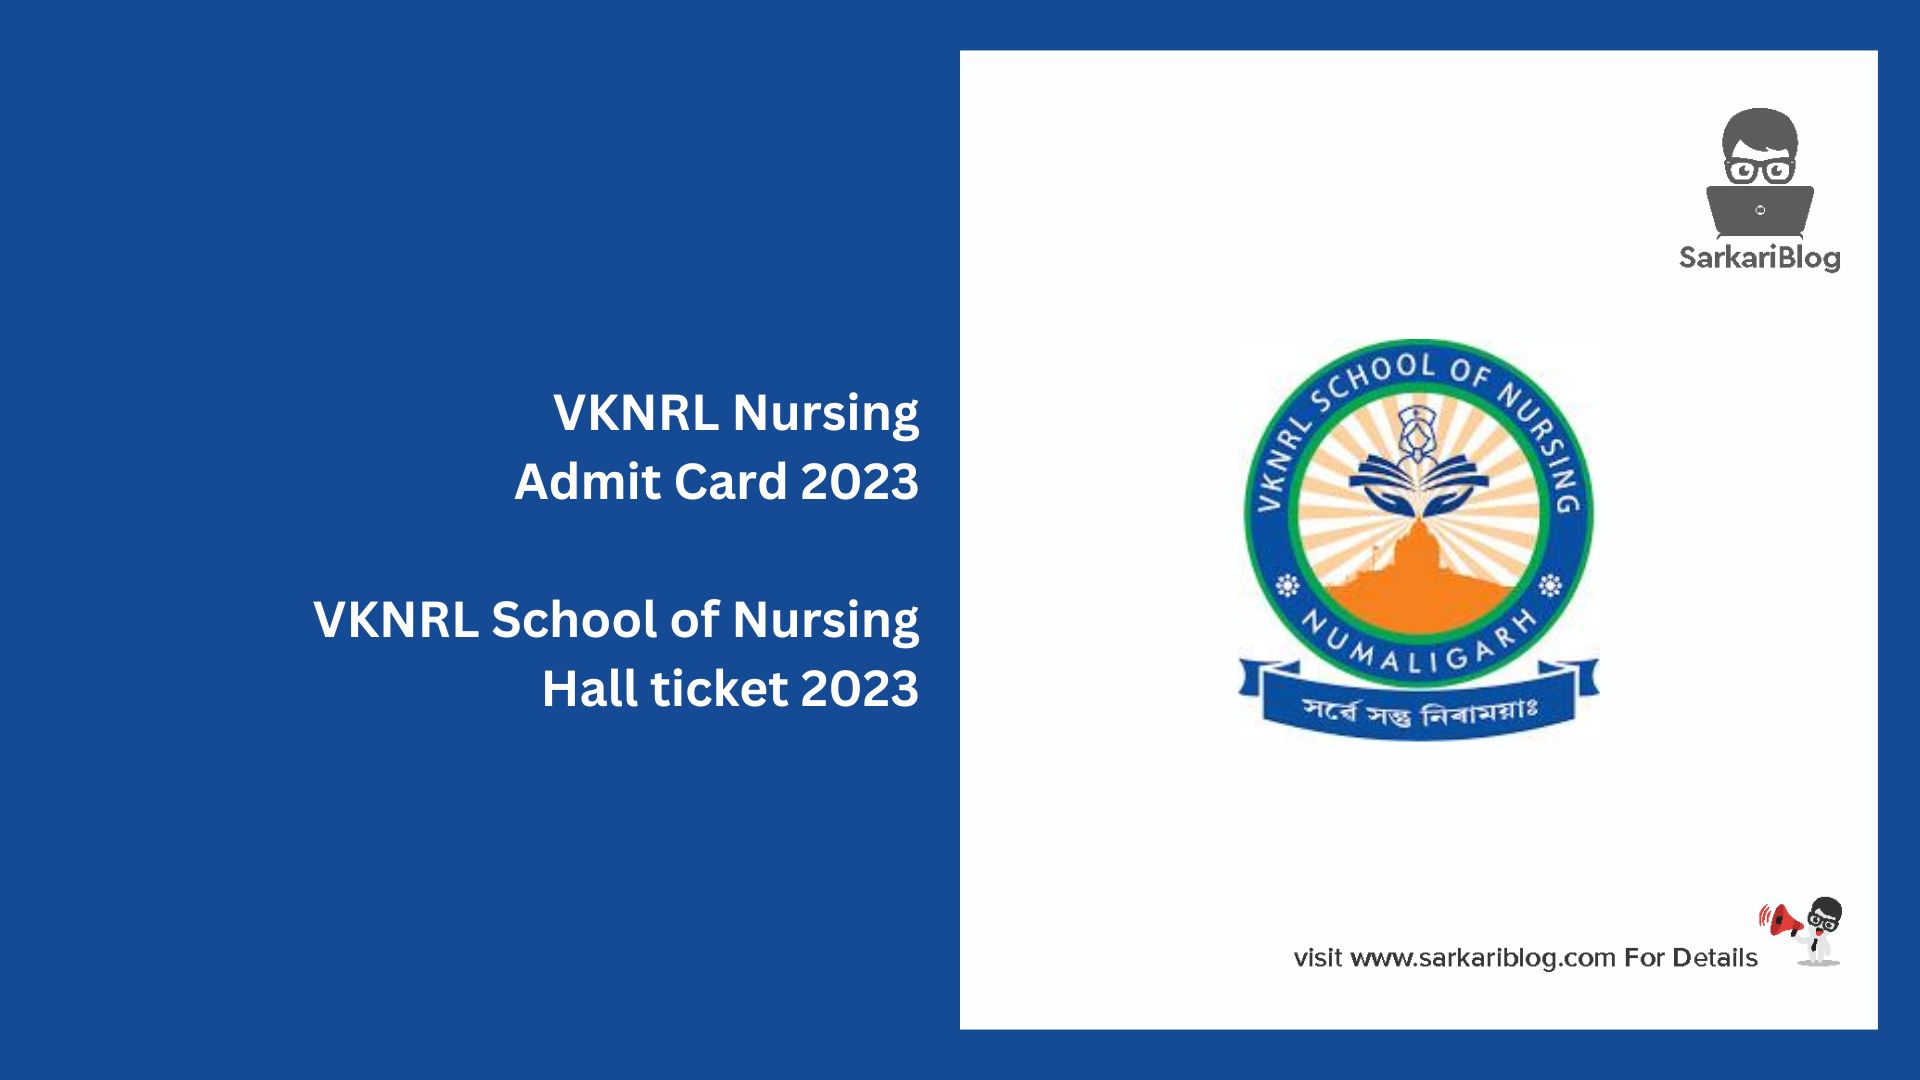 VKNRL Nursing Admit Card 2023